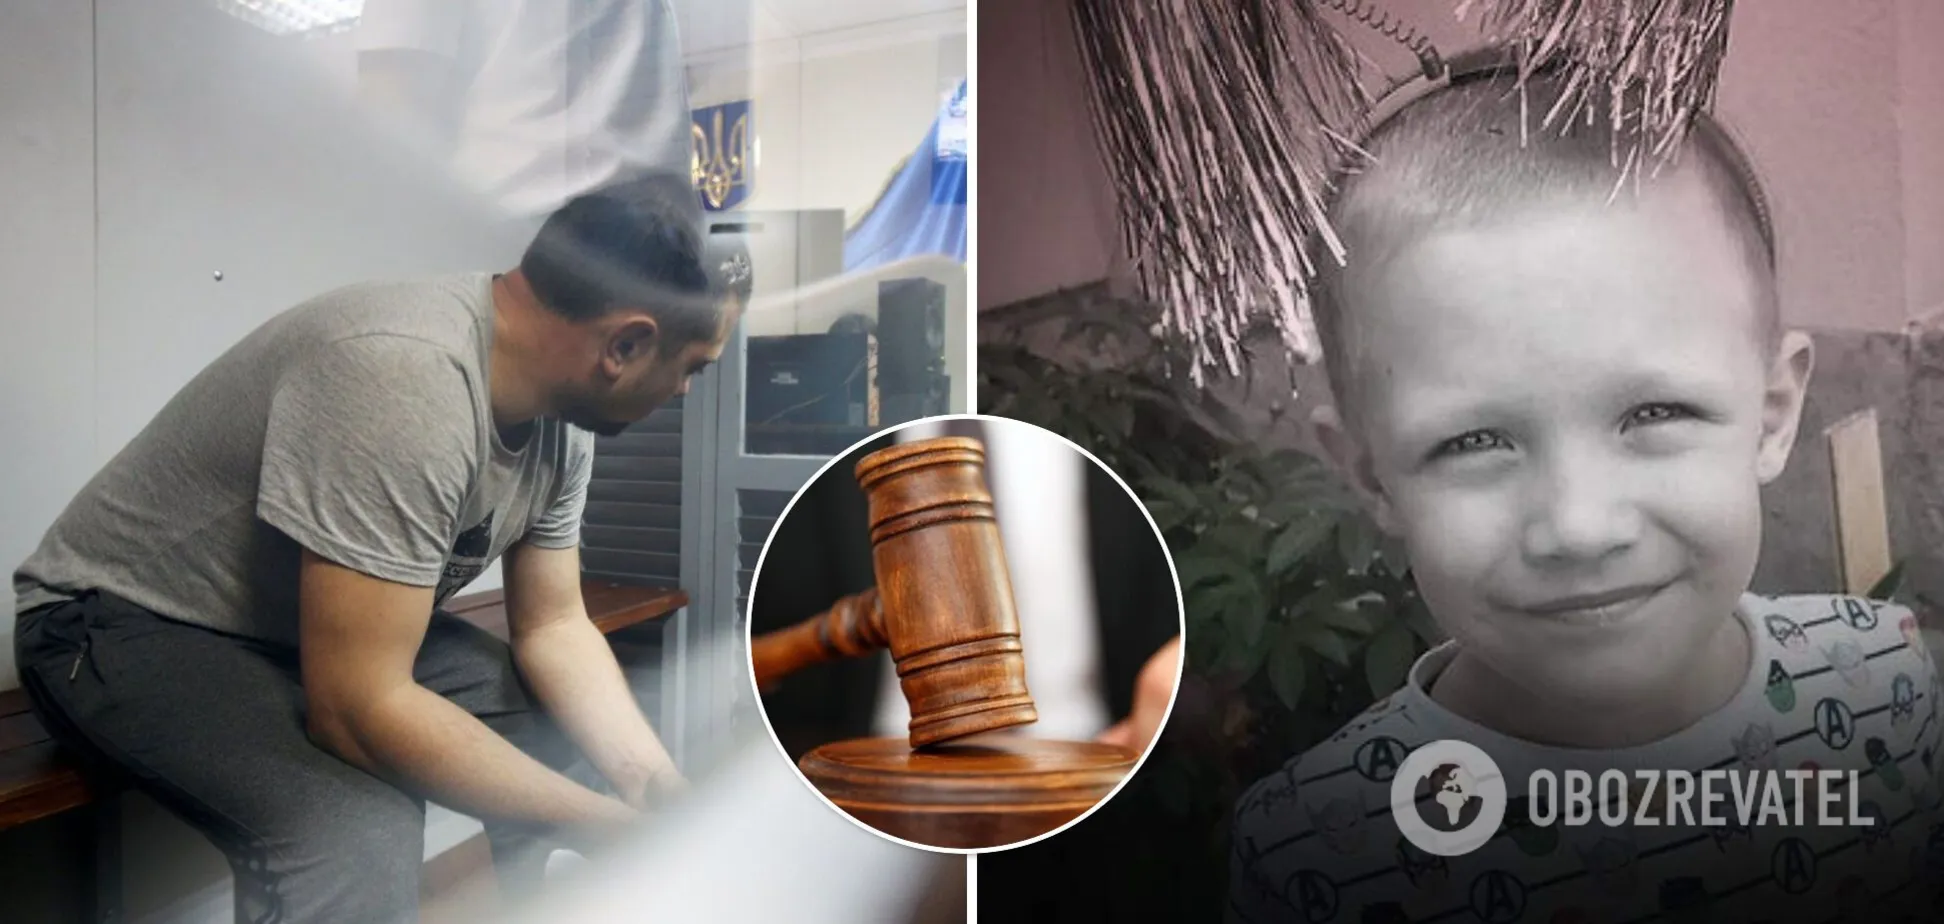 Проявились новые обстоятельства дела об убийстве 5-летнего Кирилла Тлявова